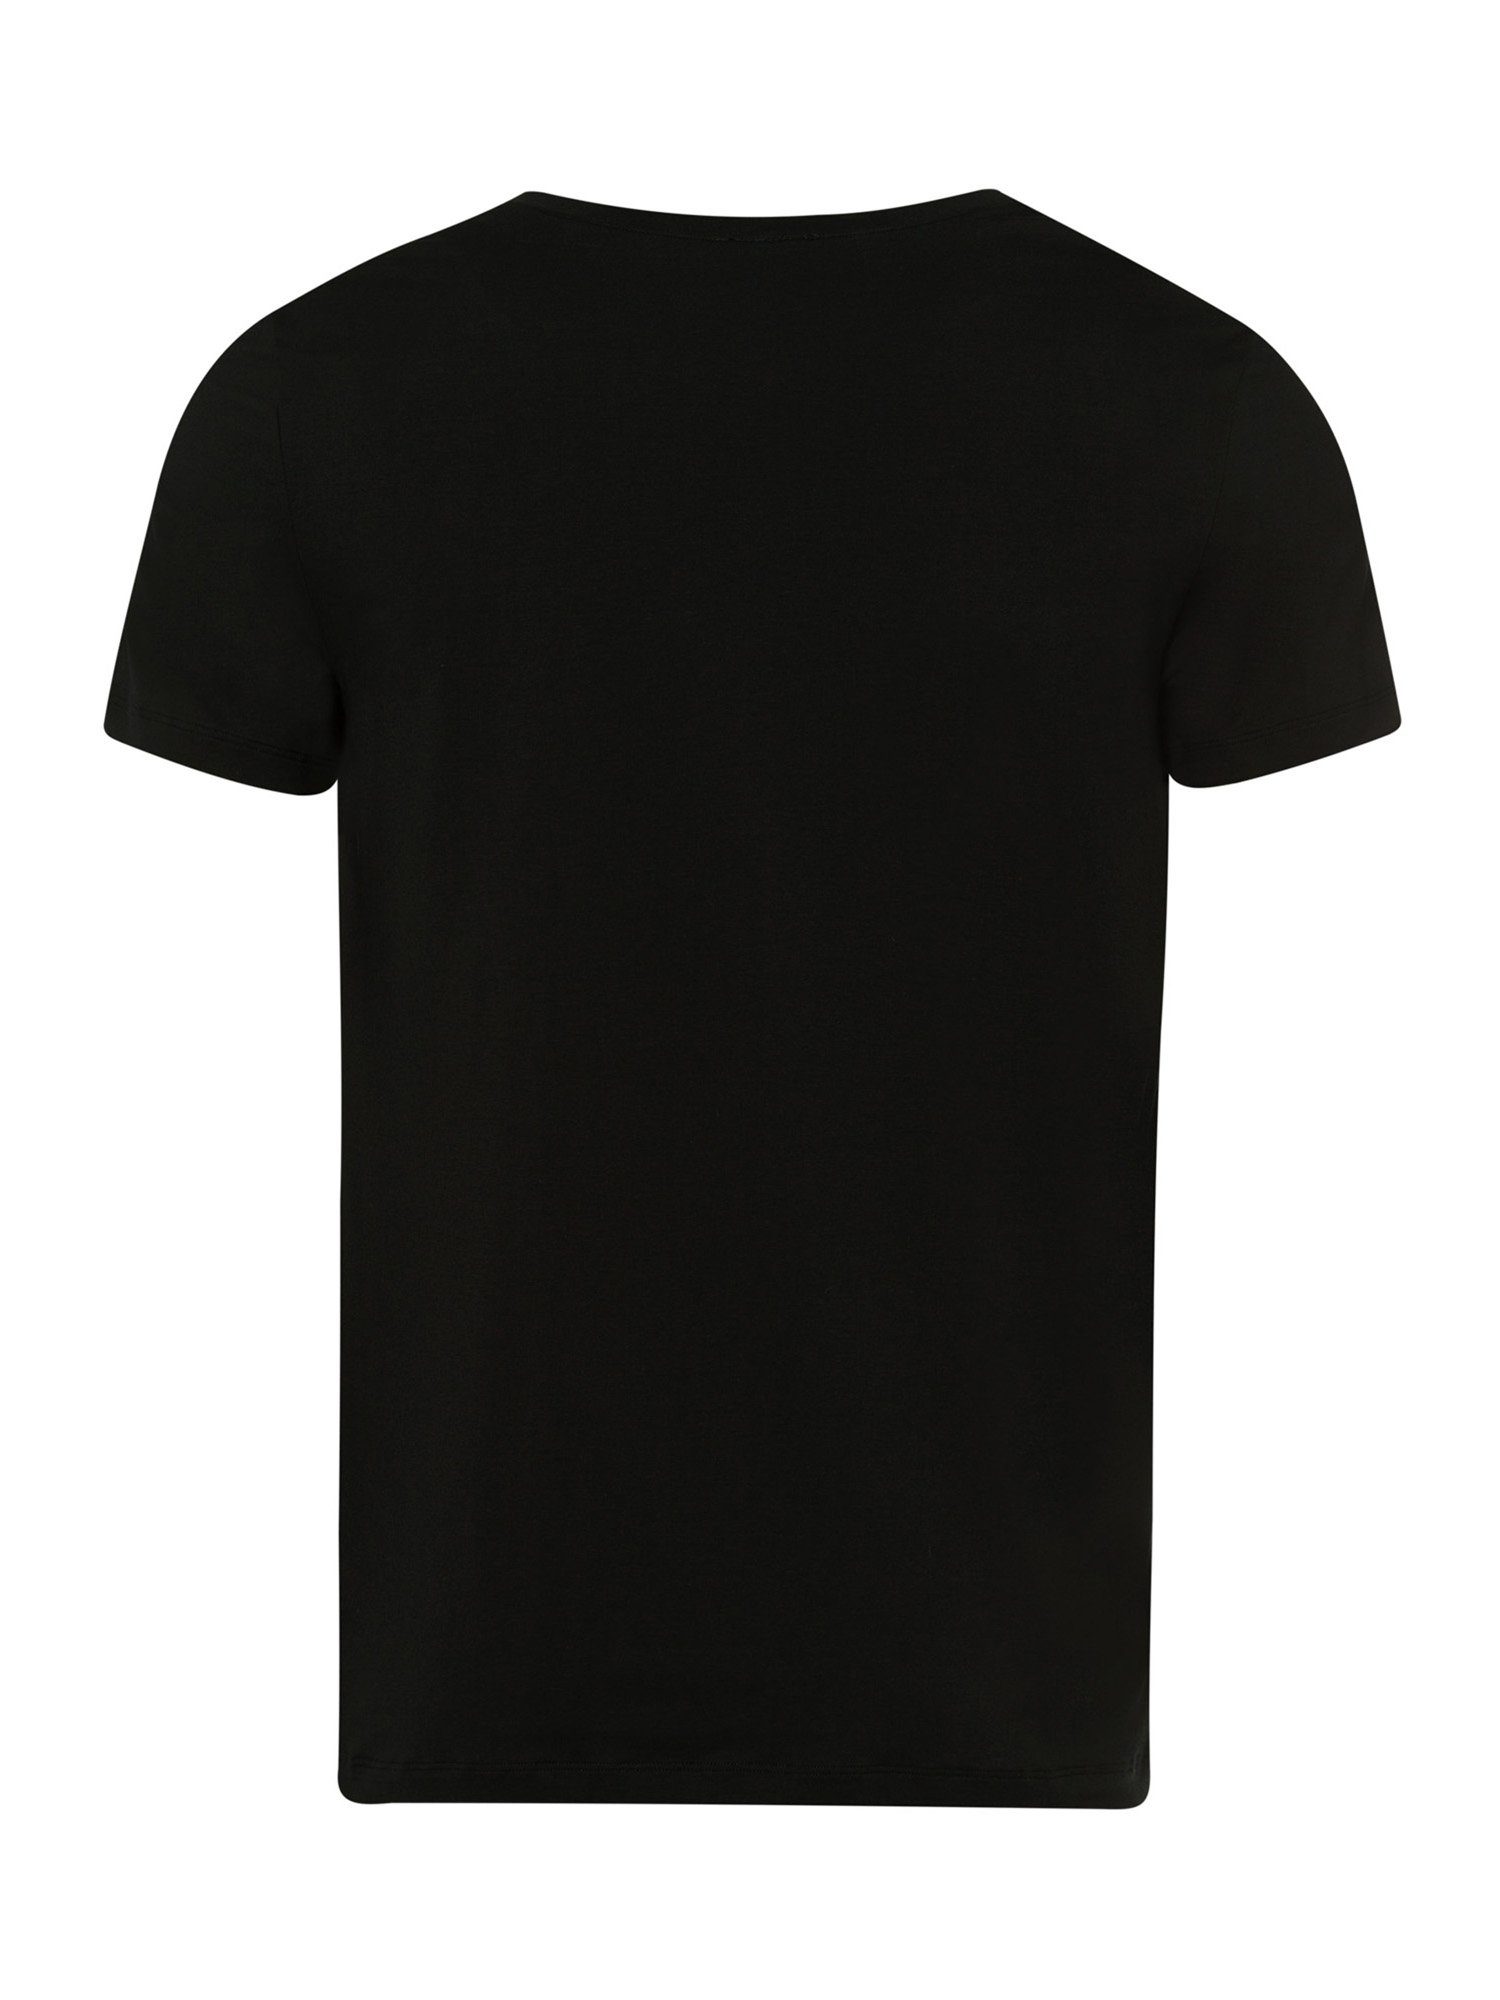 V-Shirt Cotton Superior Hanro black